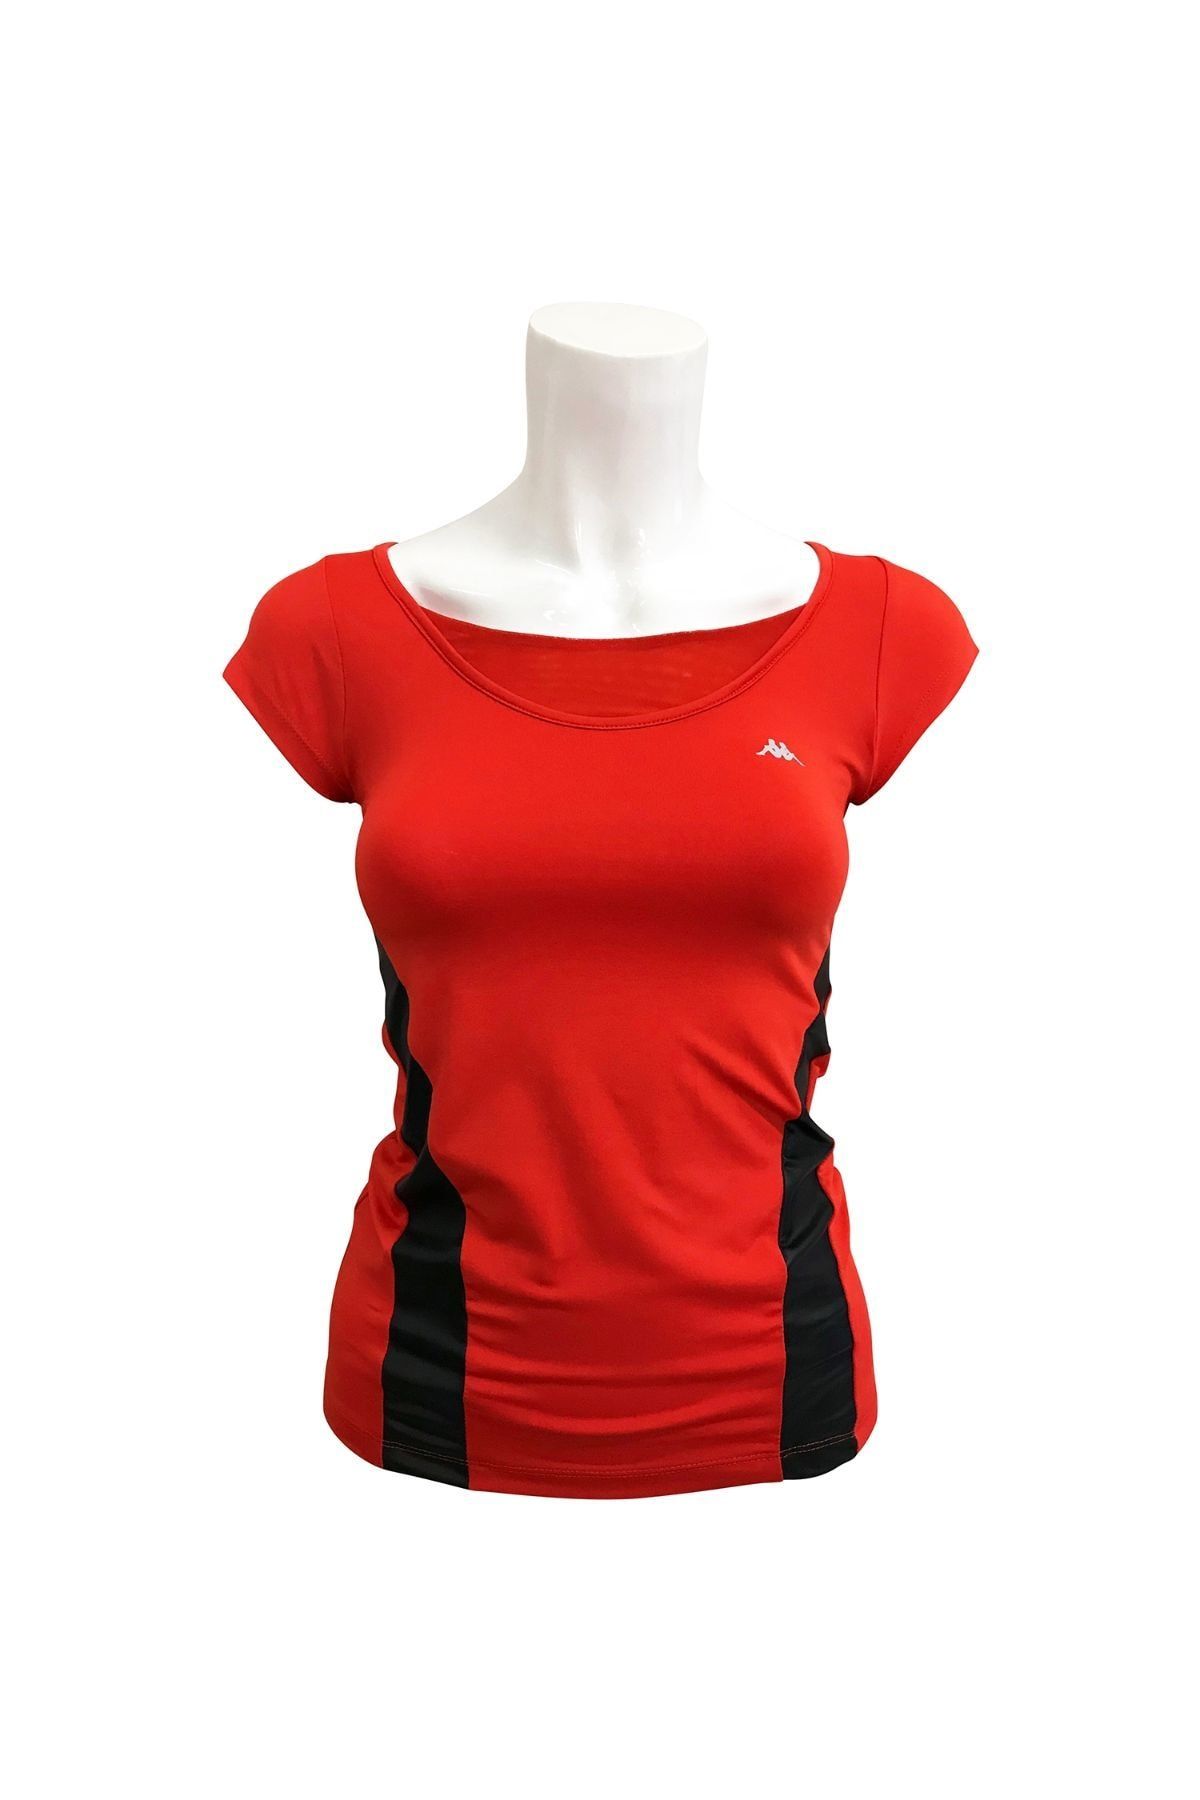 Kappa Kadın Kırmızı Polo Yaka T-shirt - Kadın T-Shirt - 1 303ITF0 565XL